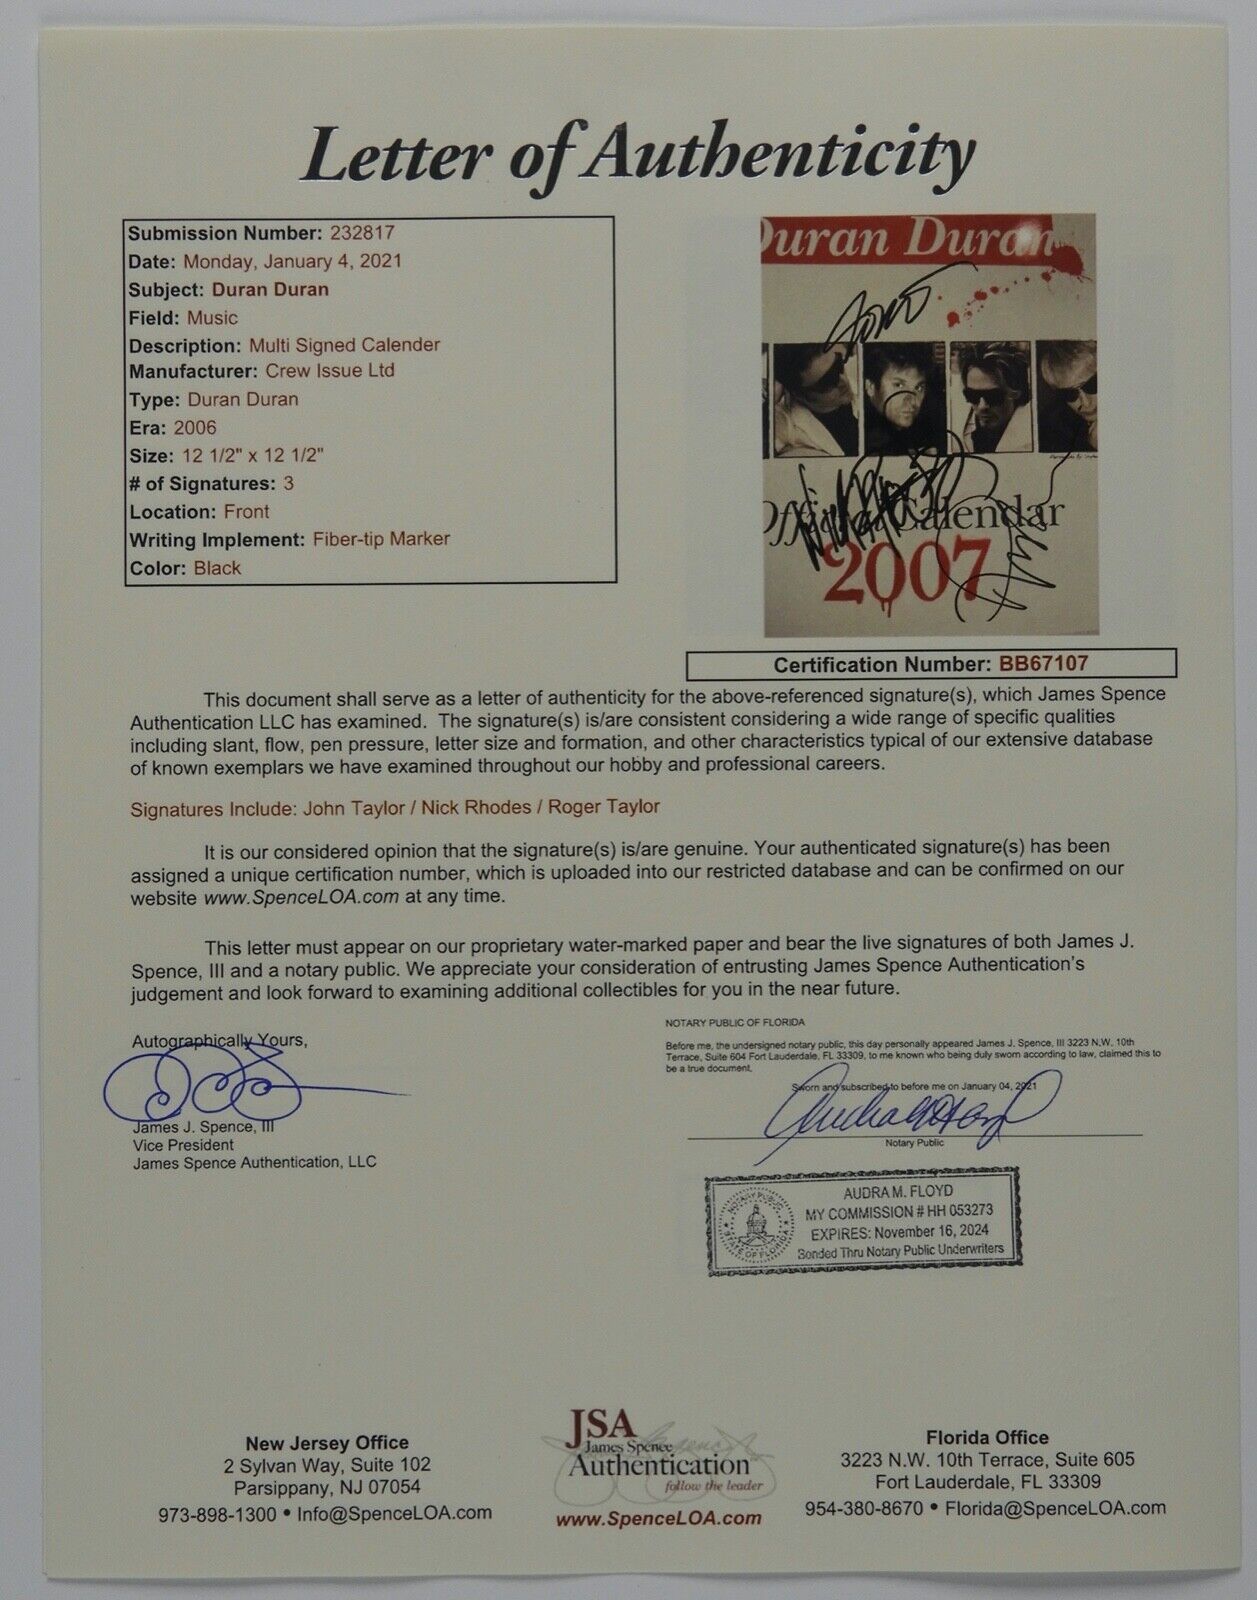 Duran Duran JSA Signed Autograph 2007 Calendar Roger Taylor Nick Rhodes John